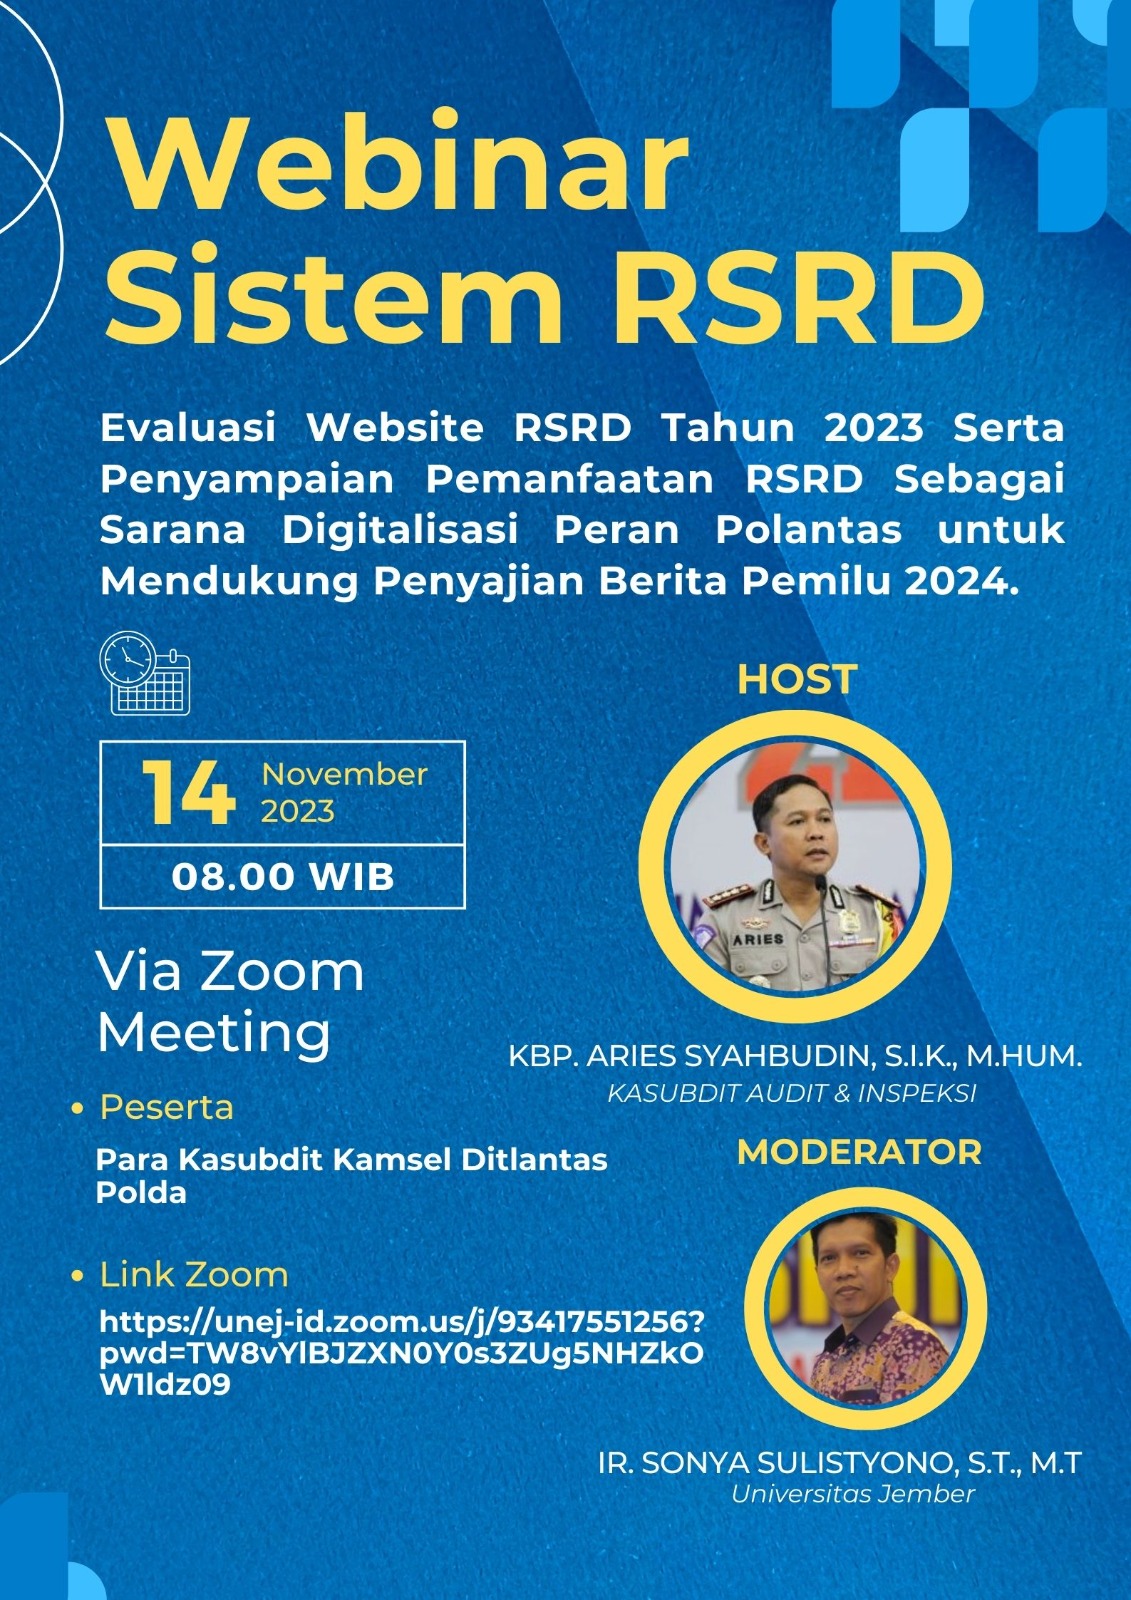 Evaluasi Website RSRD Tahun 2023 Serta Penyampaian Pemanfaatan RSRD Sebagai Sarana Digitalisasi Peran Polantas untuk Mendukung Penyajian Berita Pemilu 2024